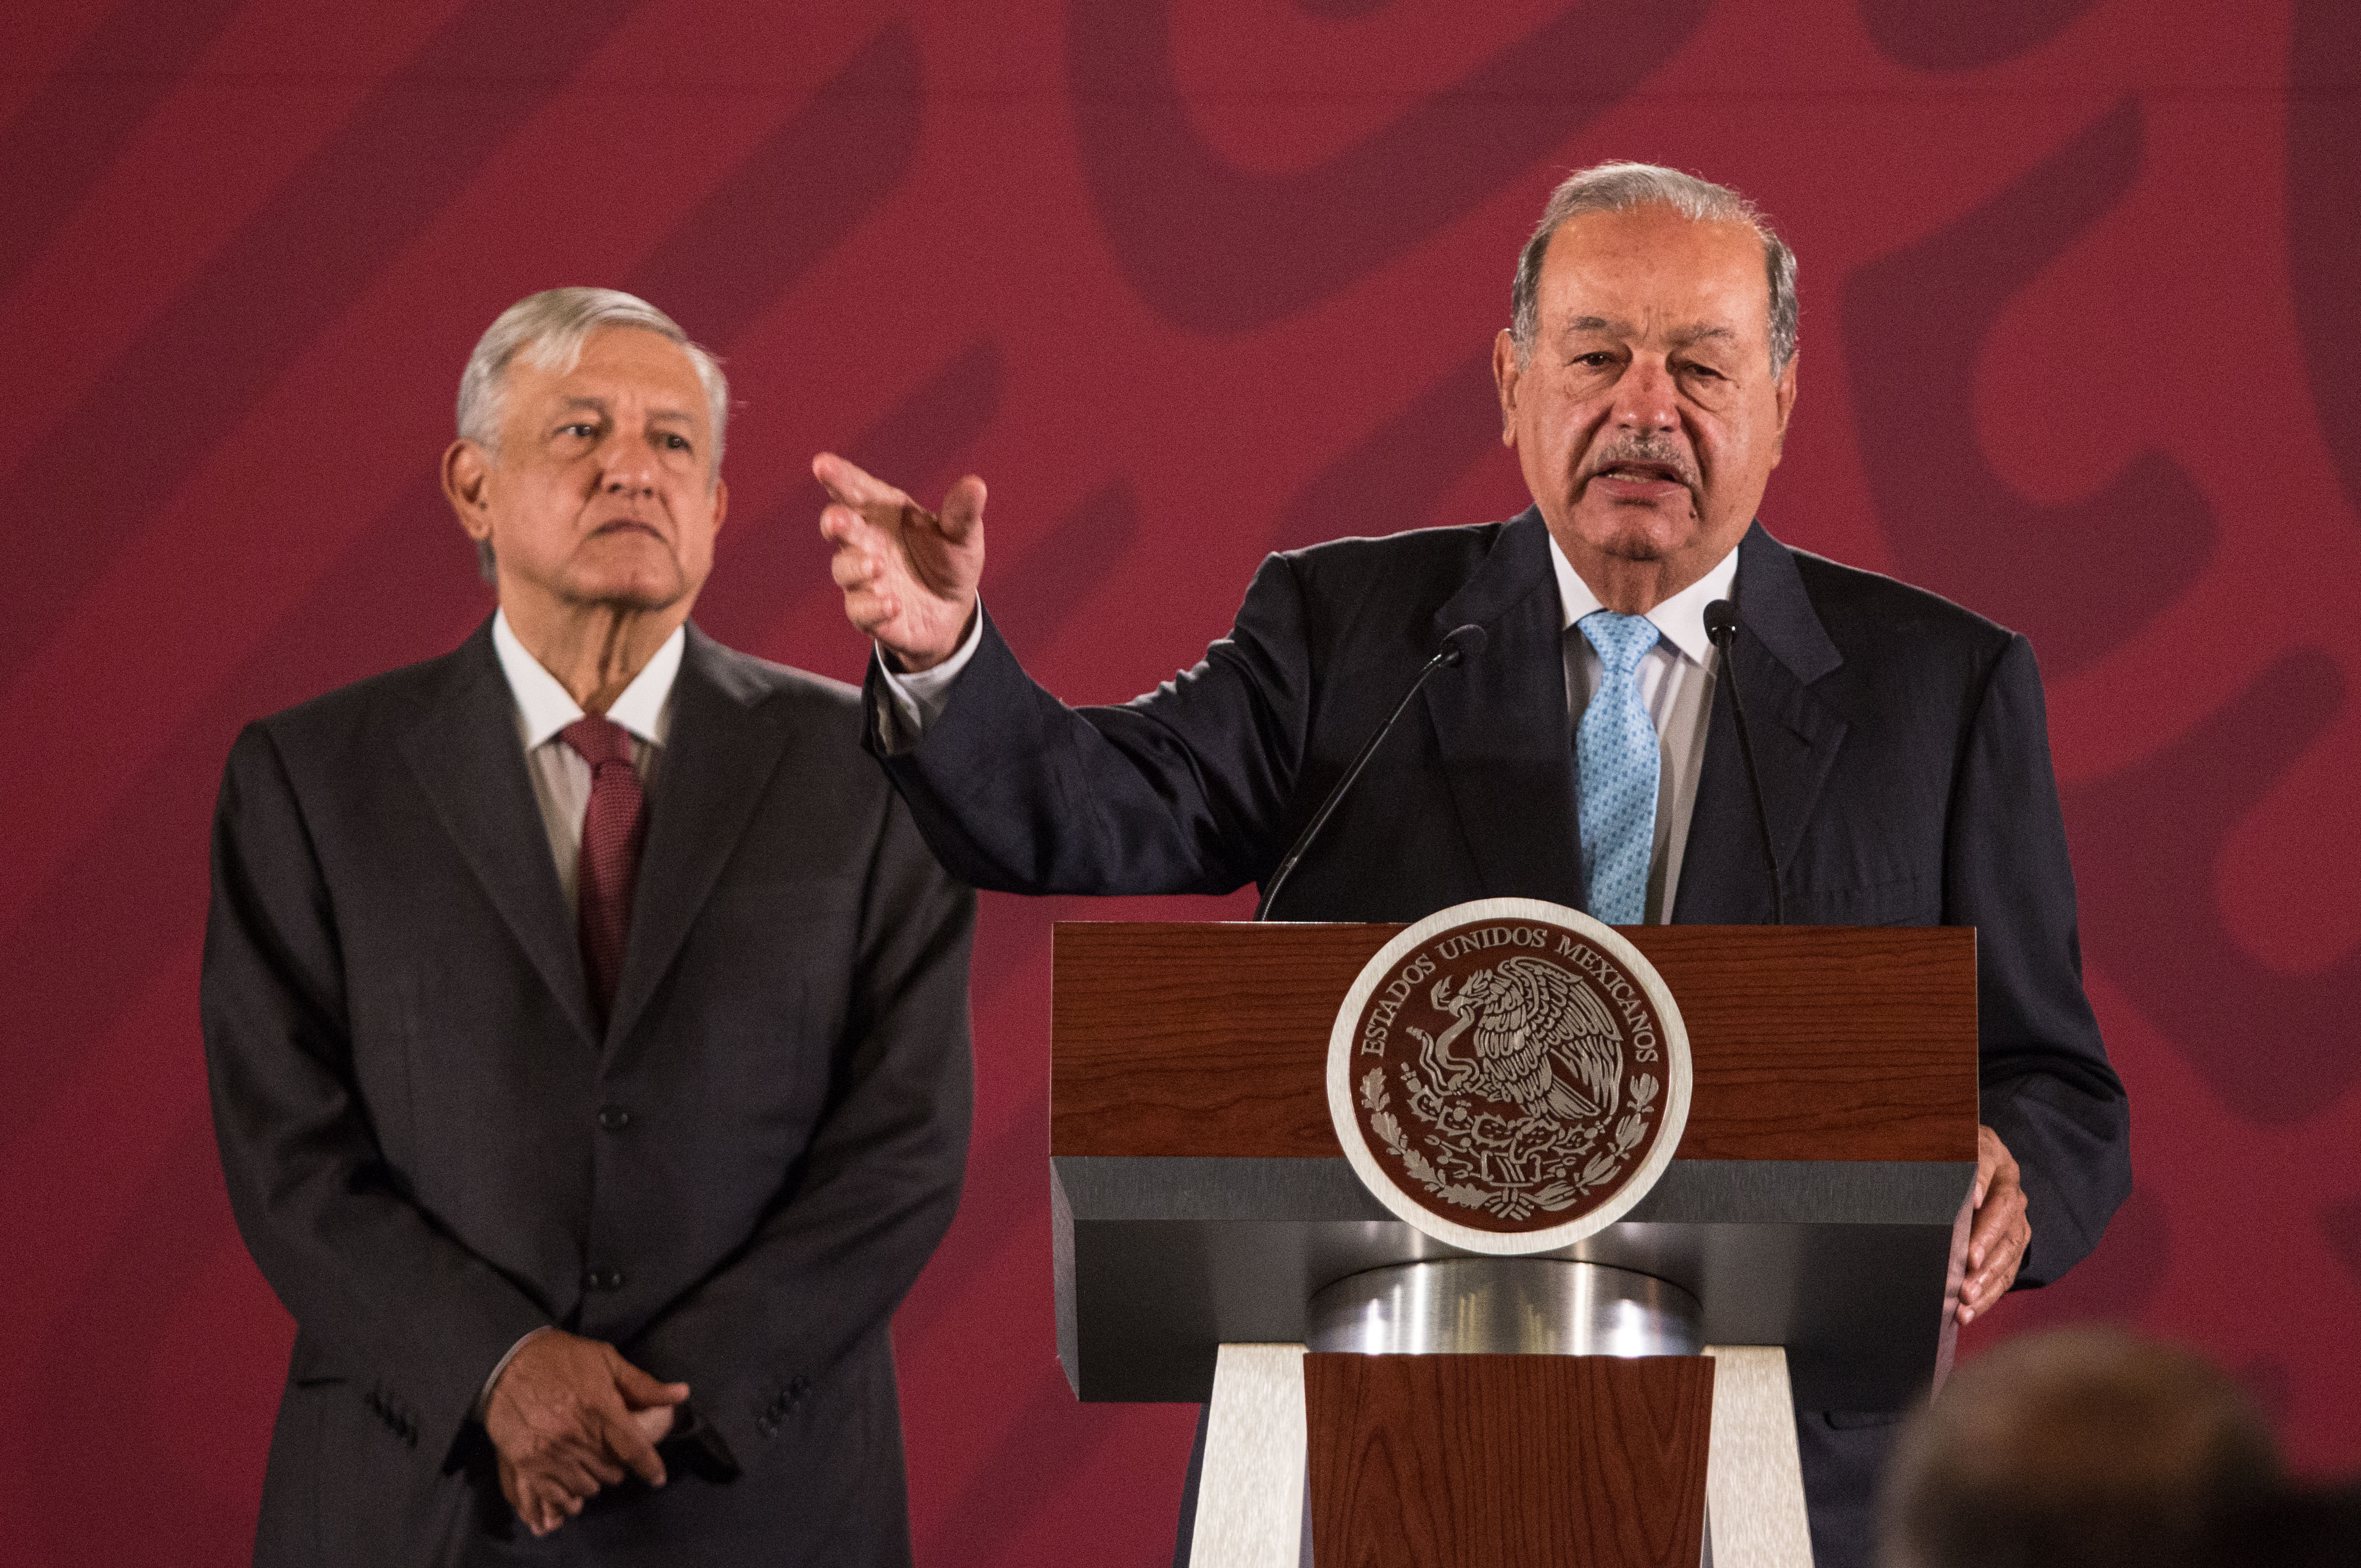 Carlos Slim: las tácticas de ahorro que usa el empresario “más austero e institucional” de México, según AMLO